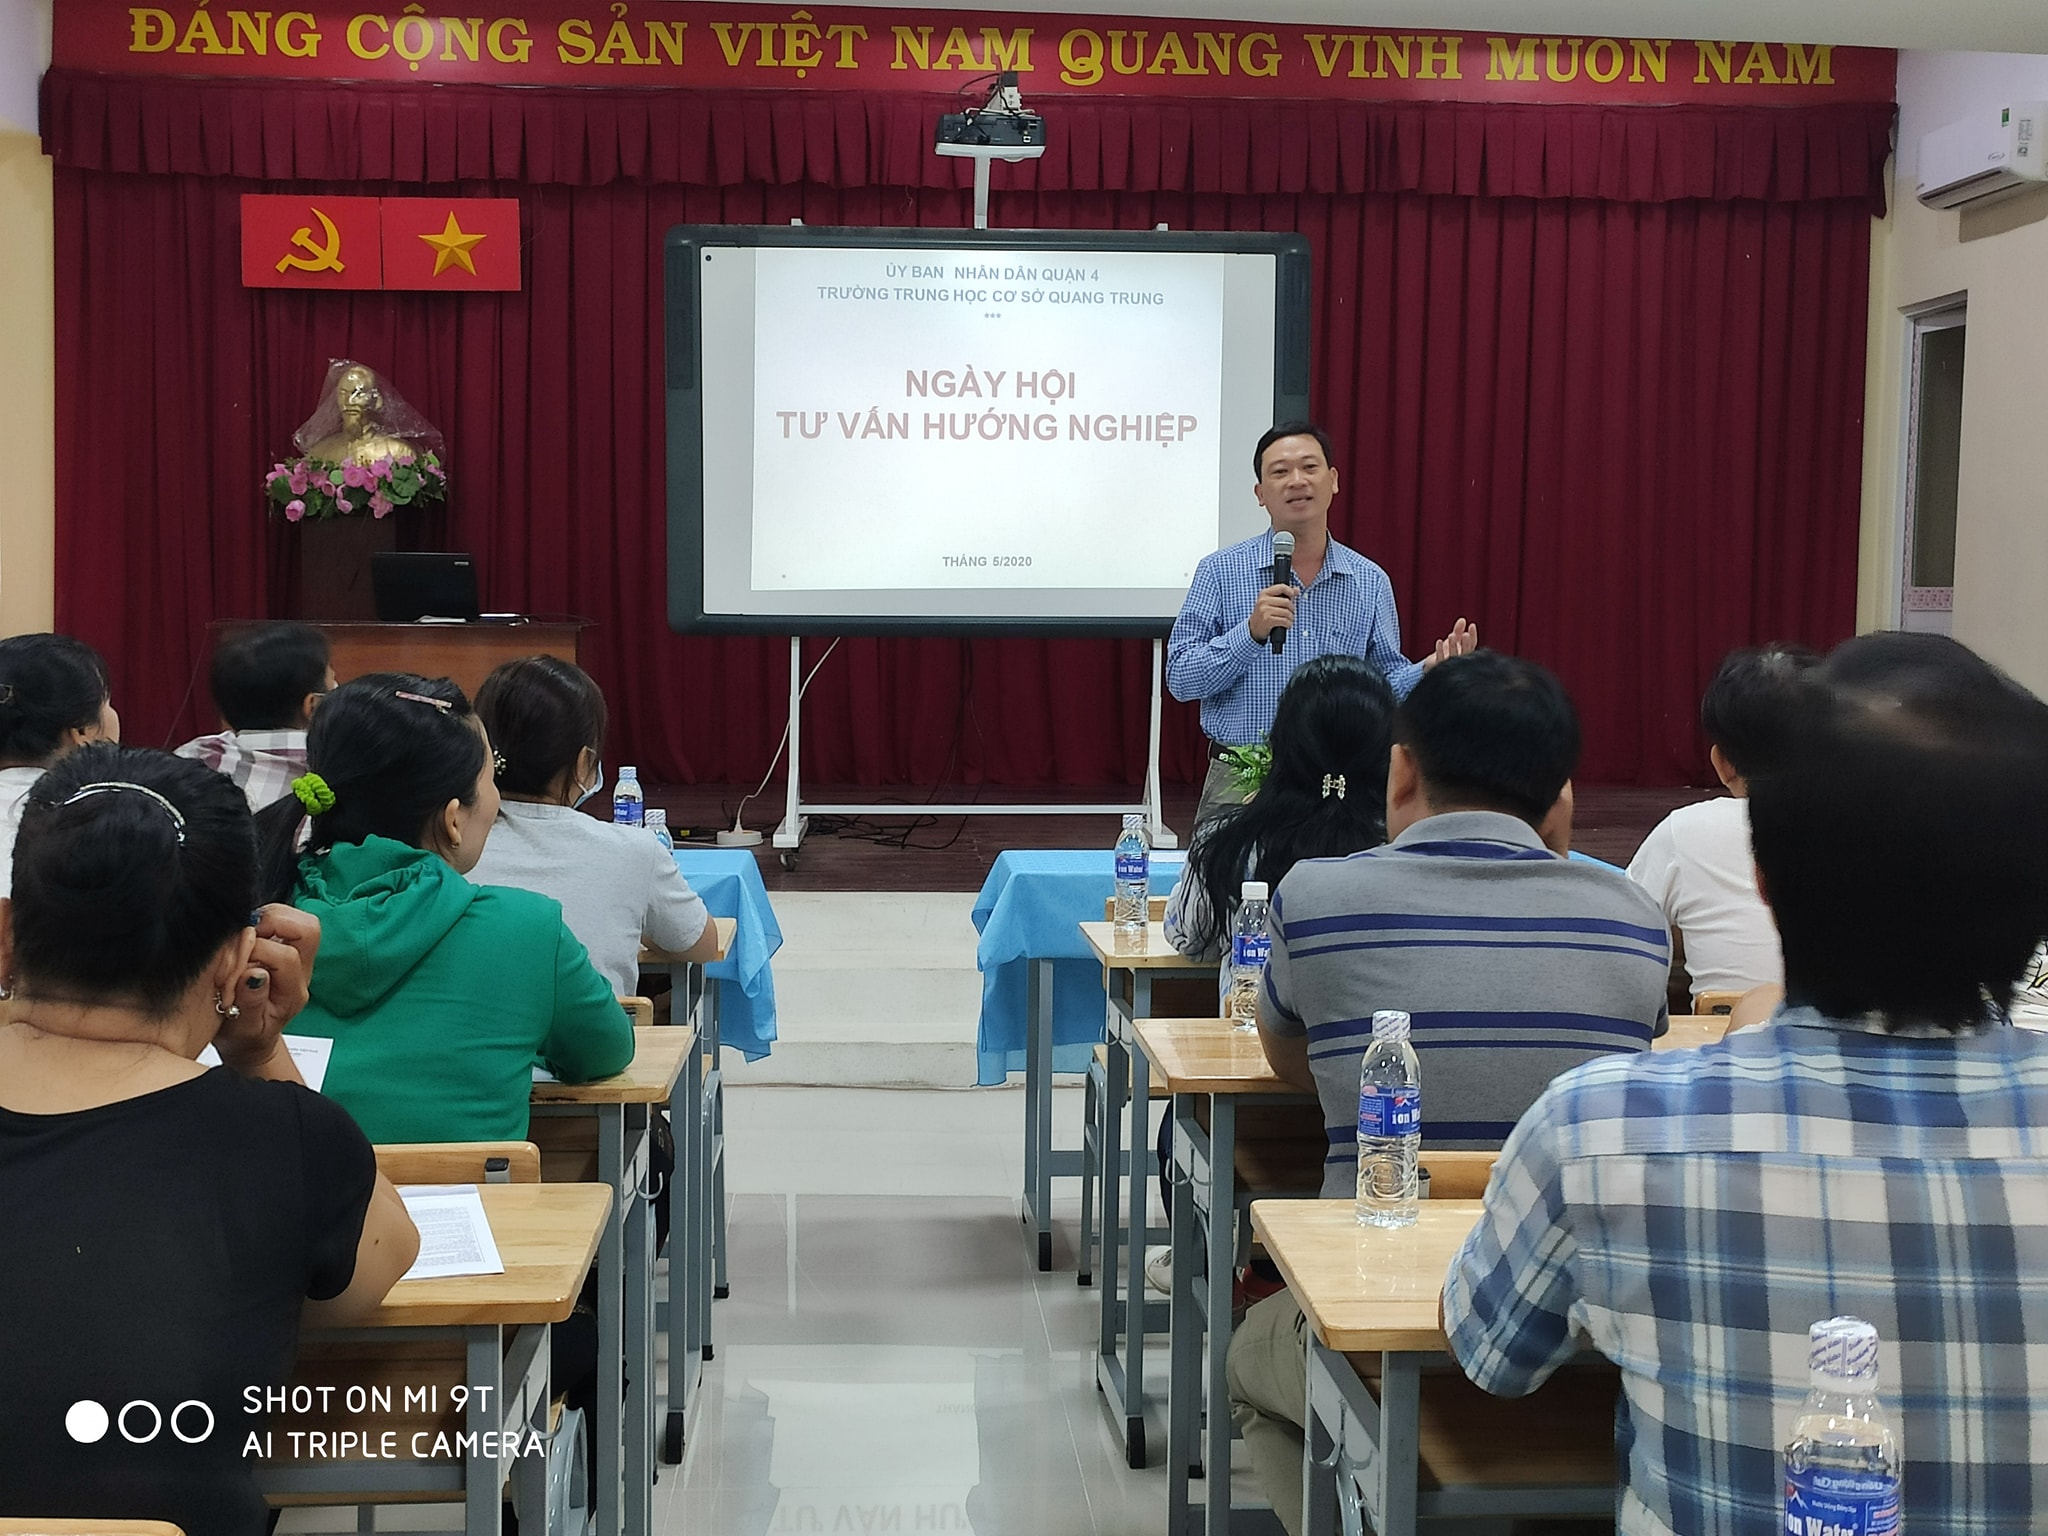 Tư vấn, hướng nghiệp tại trường THCS Quang Trung